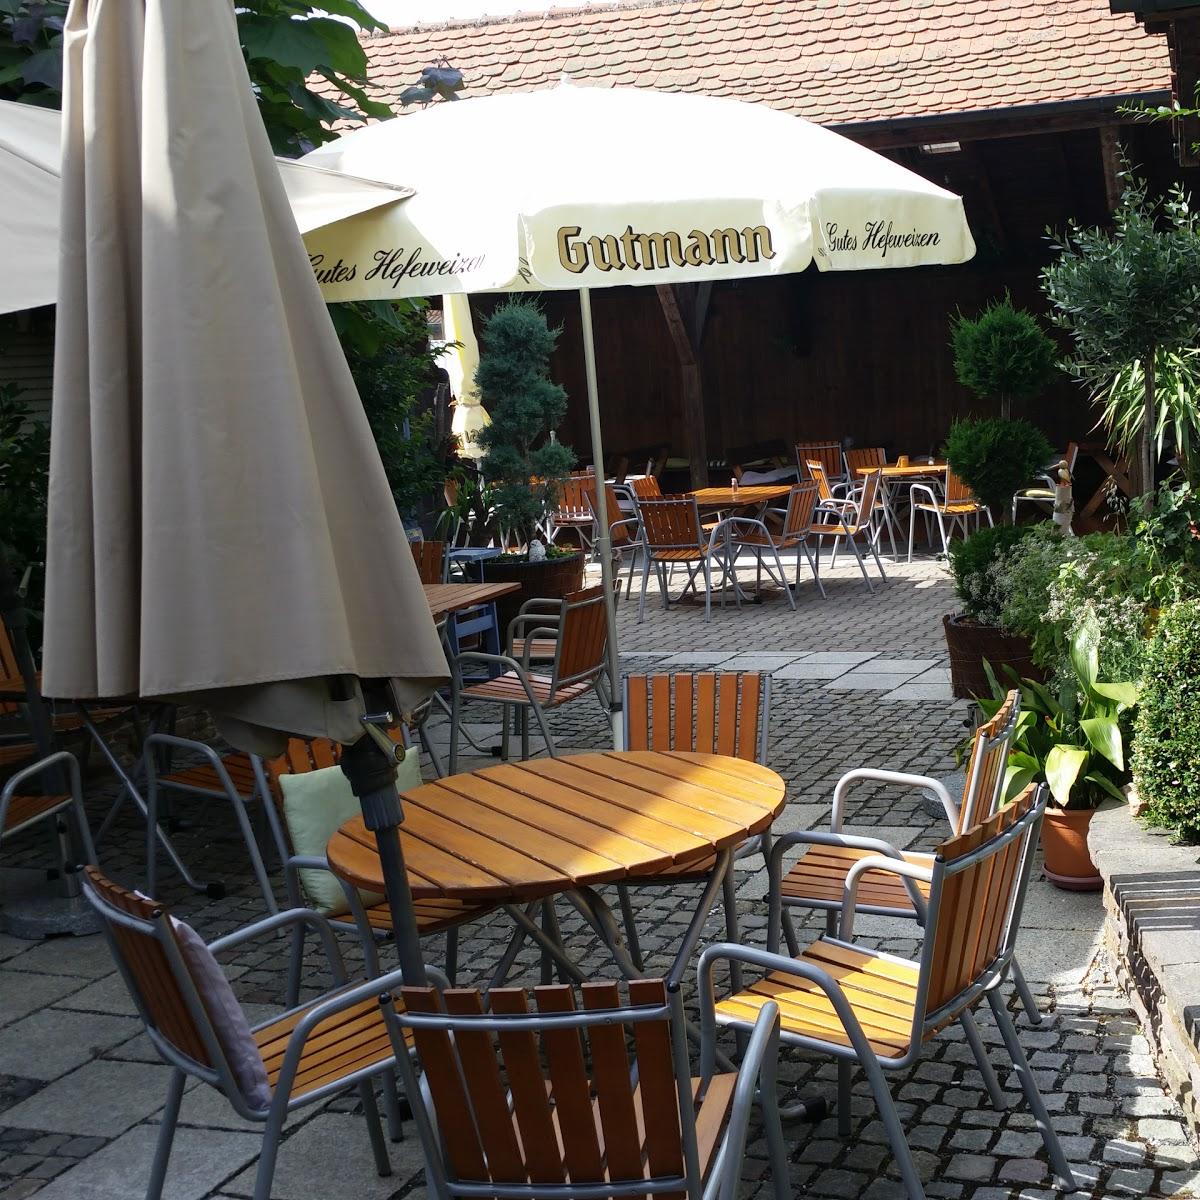 Restaurant "Landgasthof Wernsbach" in Georgensgmünd